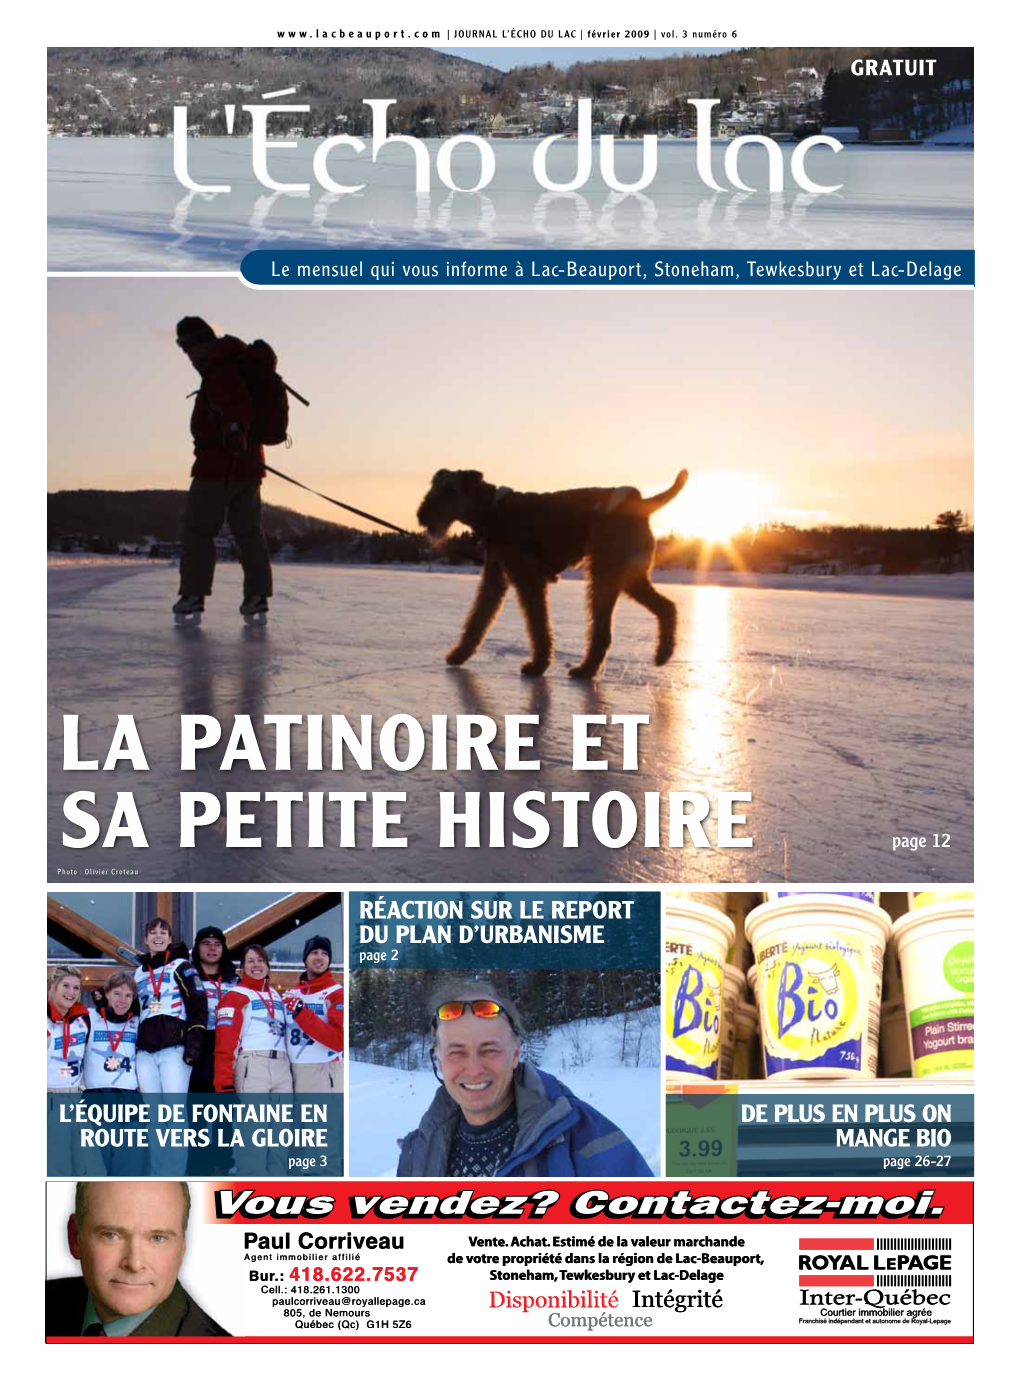 La Patinoire Et Sa Petite Histoire Page 12 Photo : Olivier Croteau RÉACTION SUR LE REPORT DU PLAN D’URBANISME Page 2